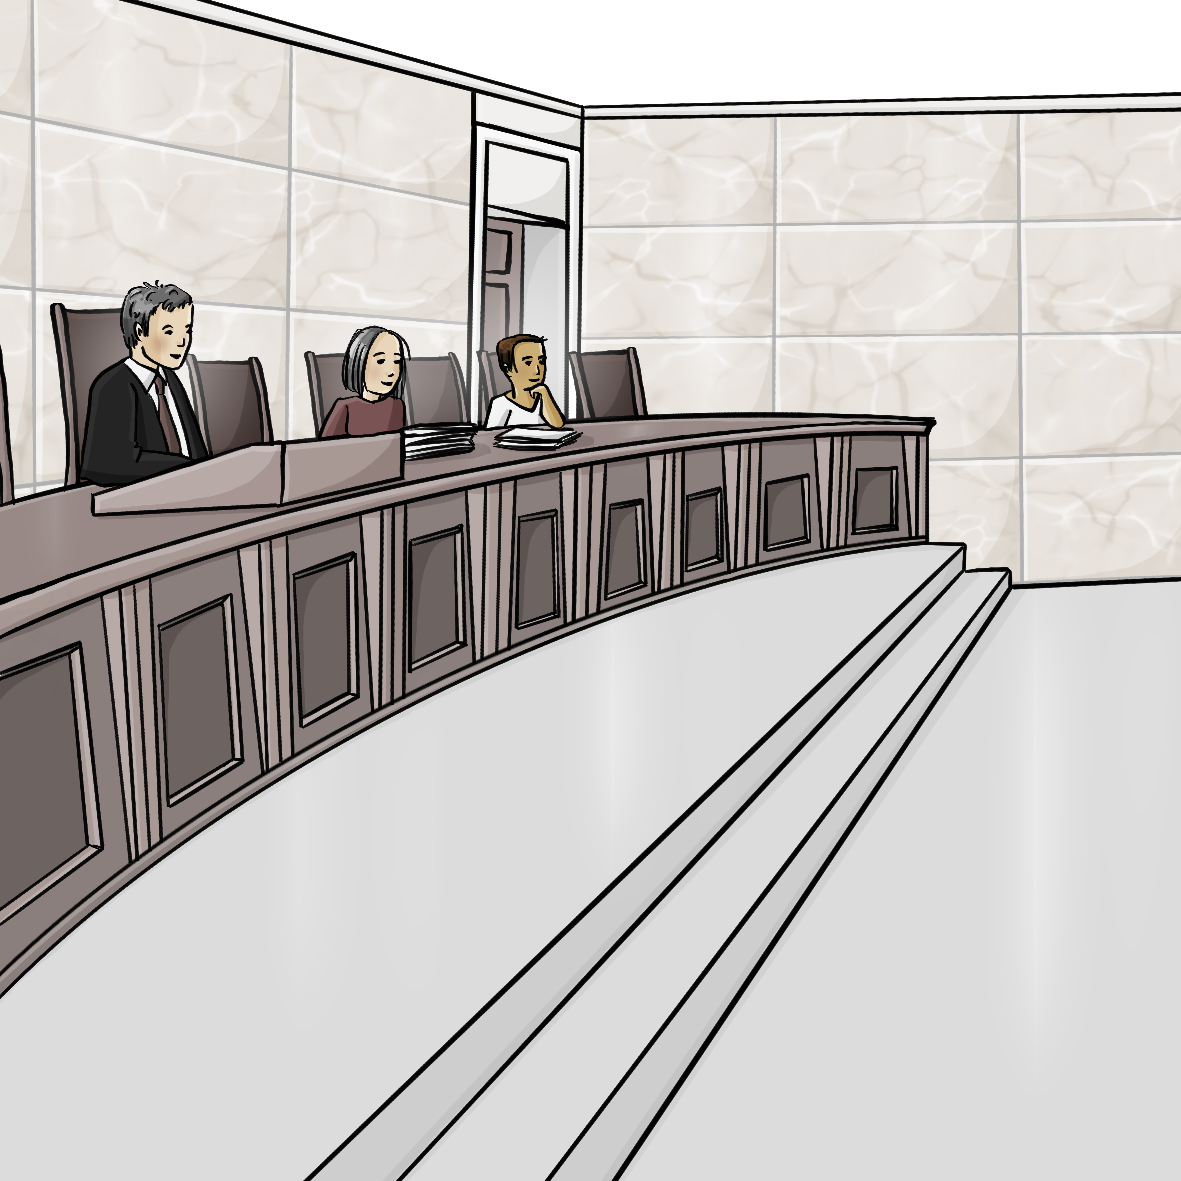 Eine Gerichtsaal. Auf den Richterstühlen sitzen zwei Richter und eine Richterin.